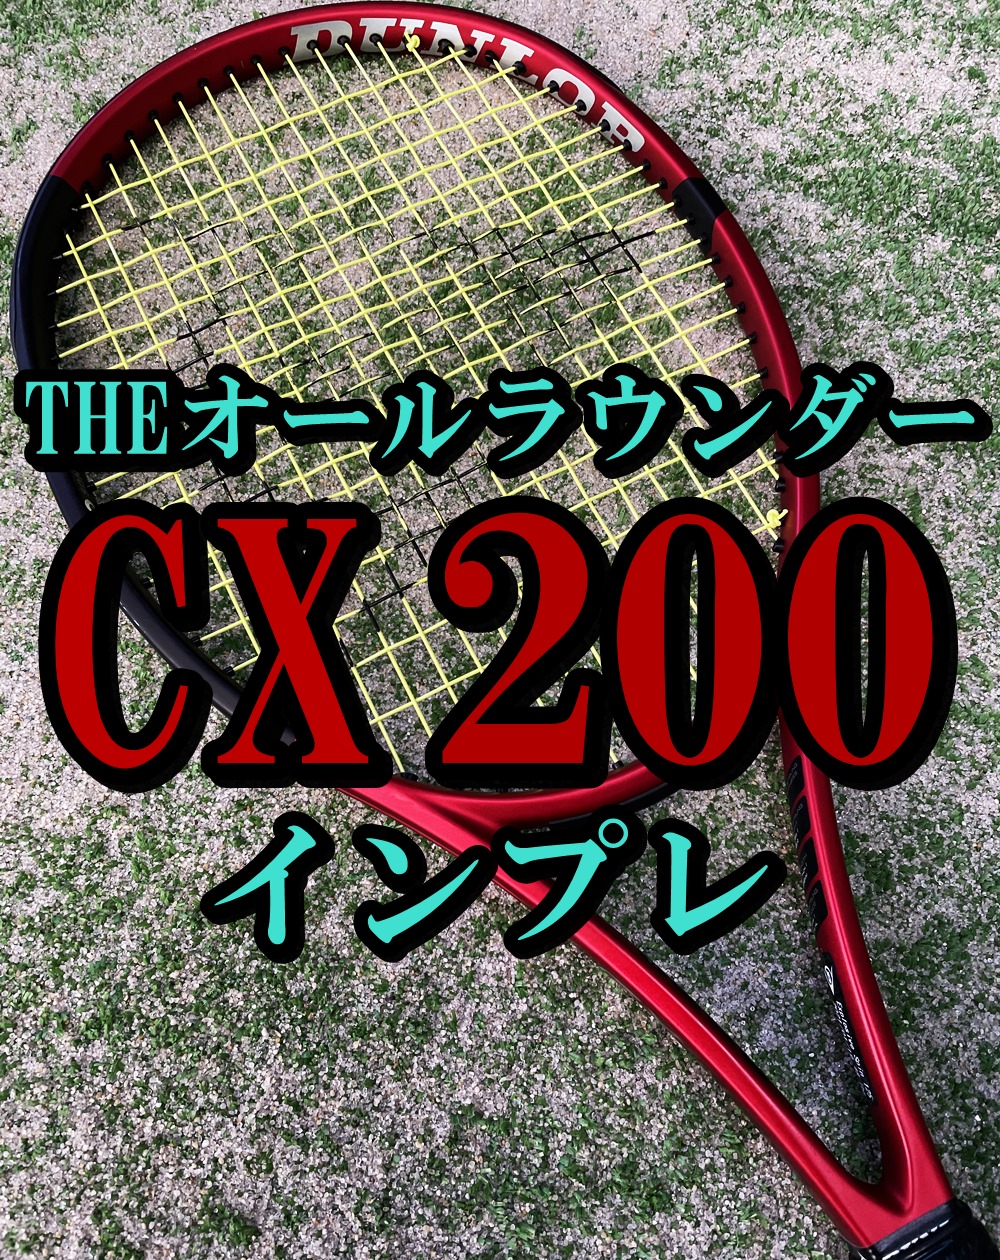 人気モデル！】CX200 2021 インプレ・評価・レビュー【ダンロップ 